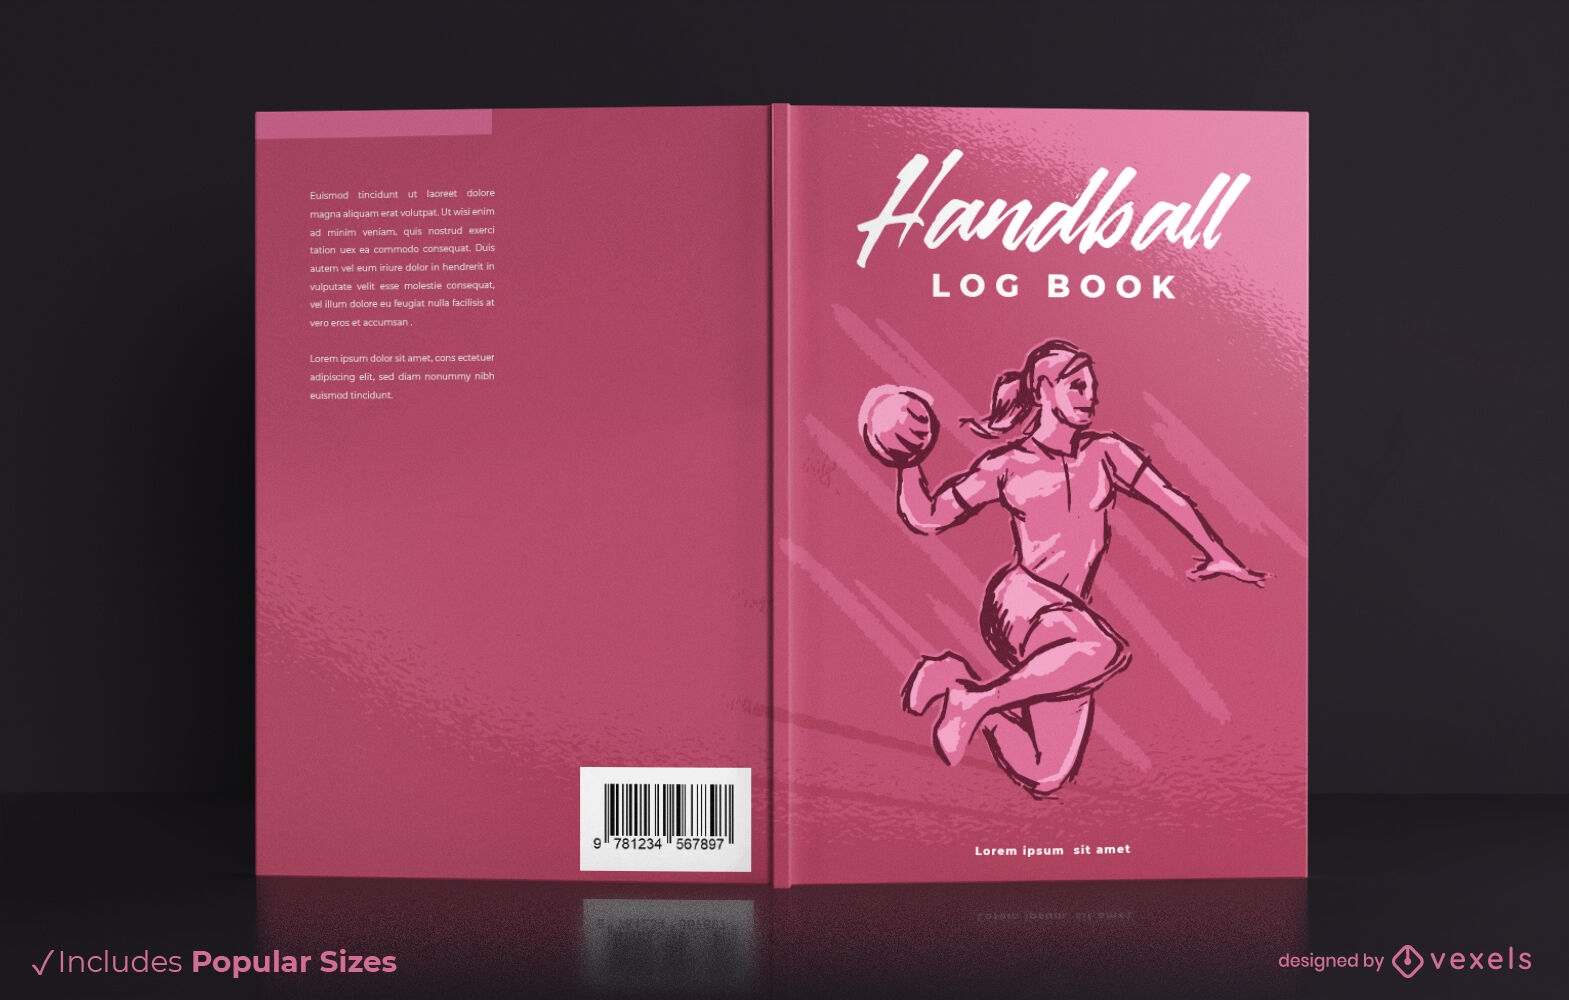 Handball log Book cover design